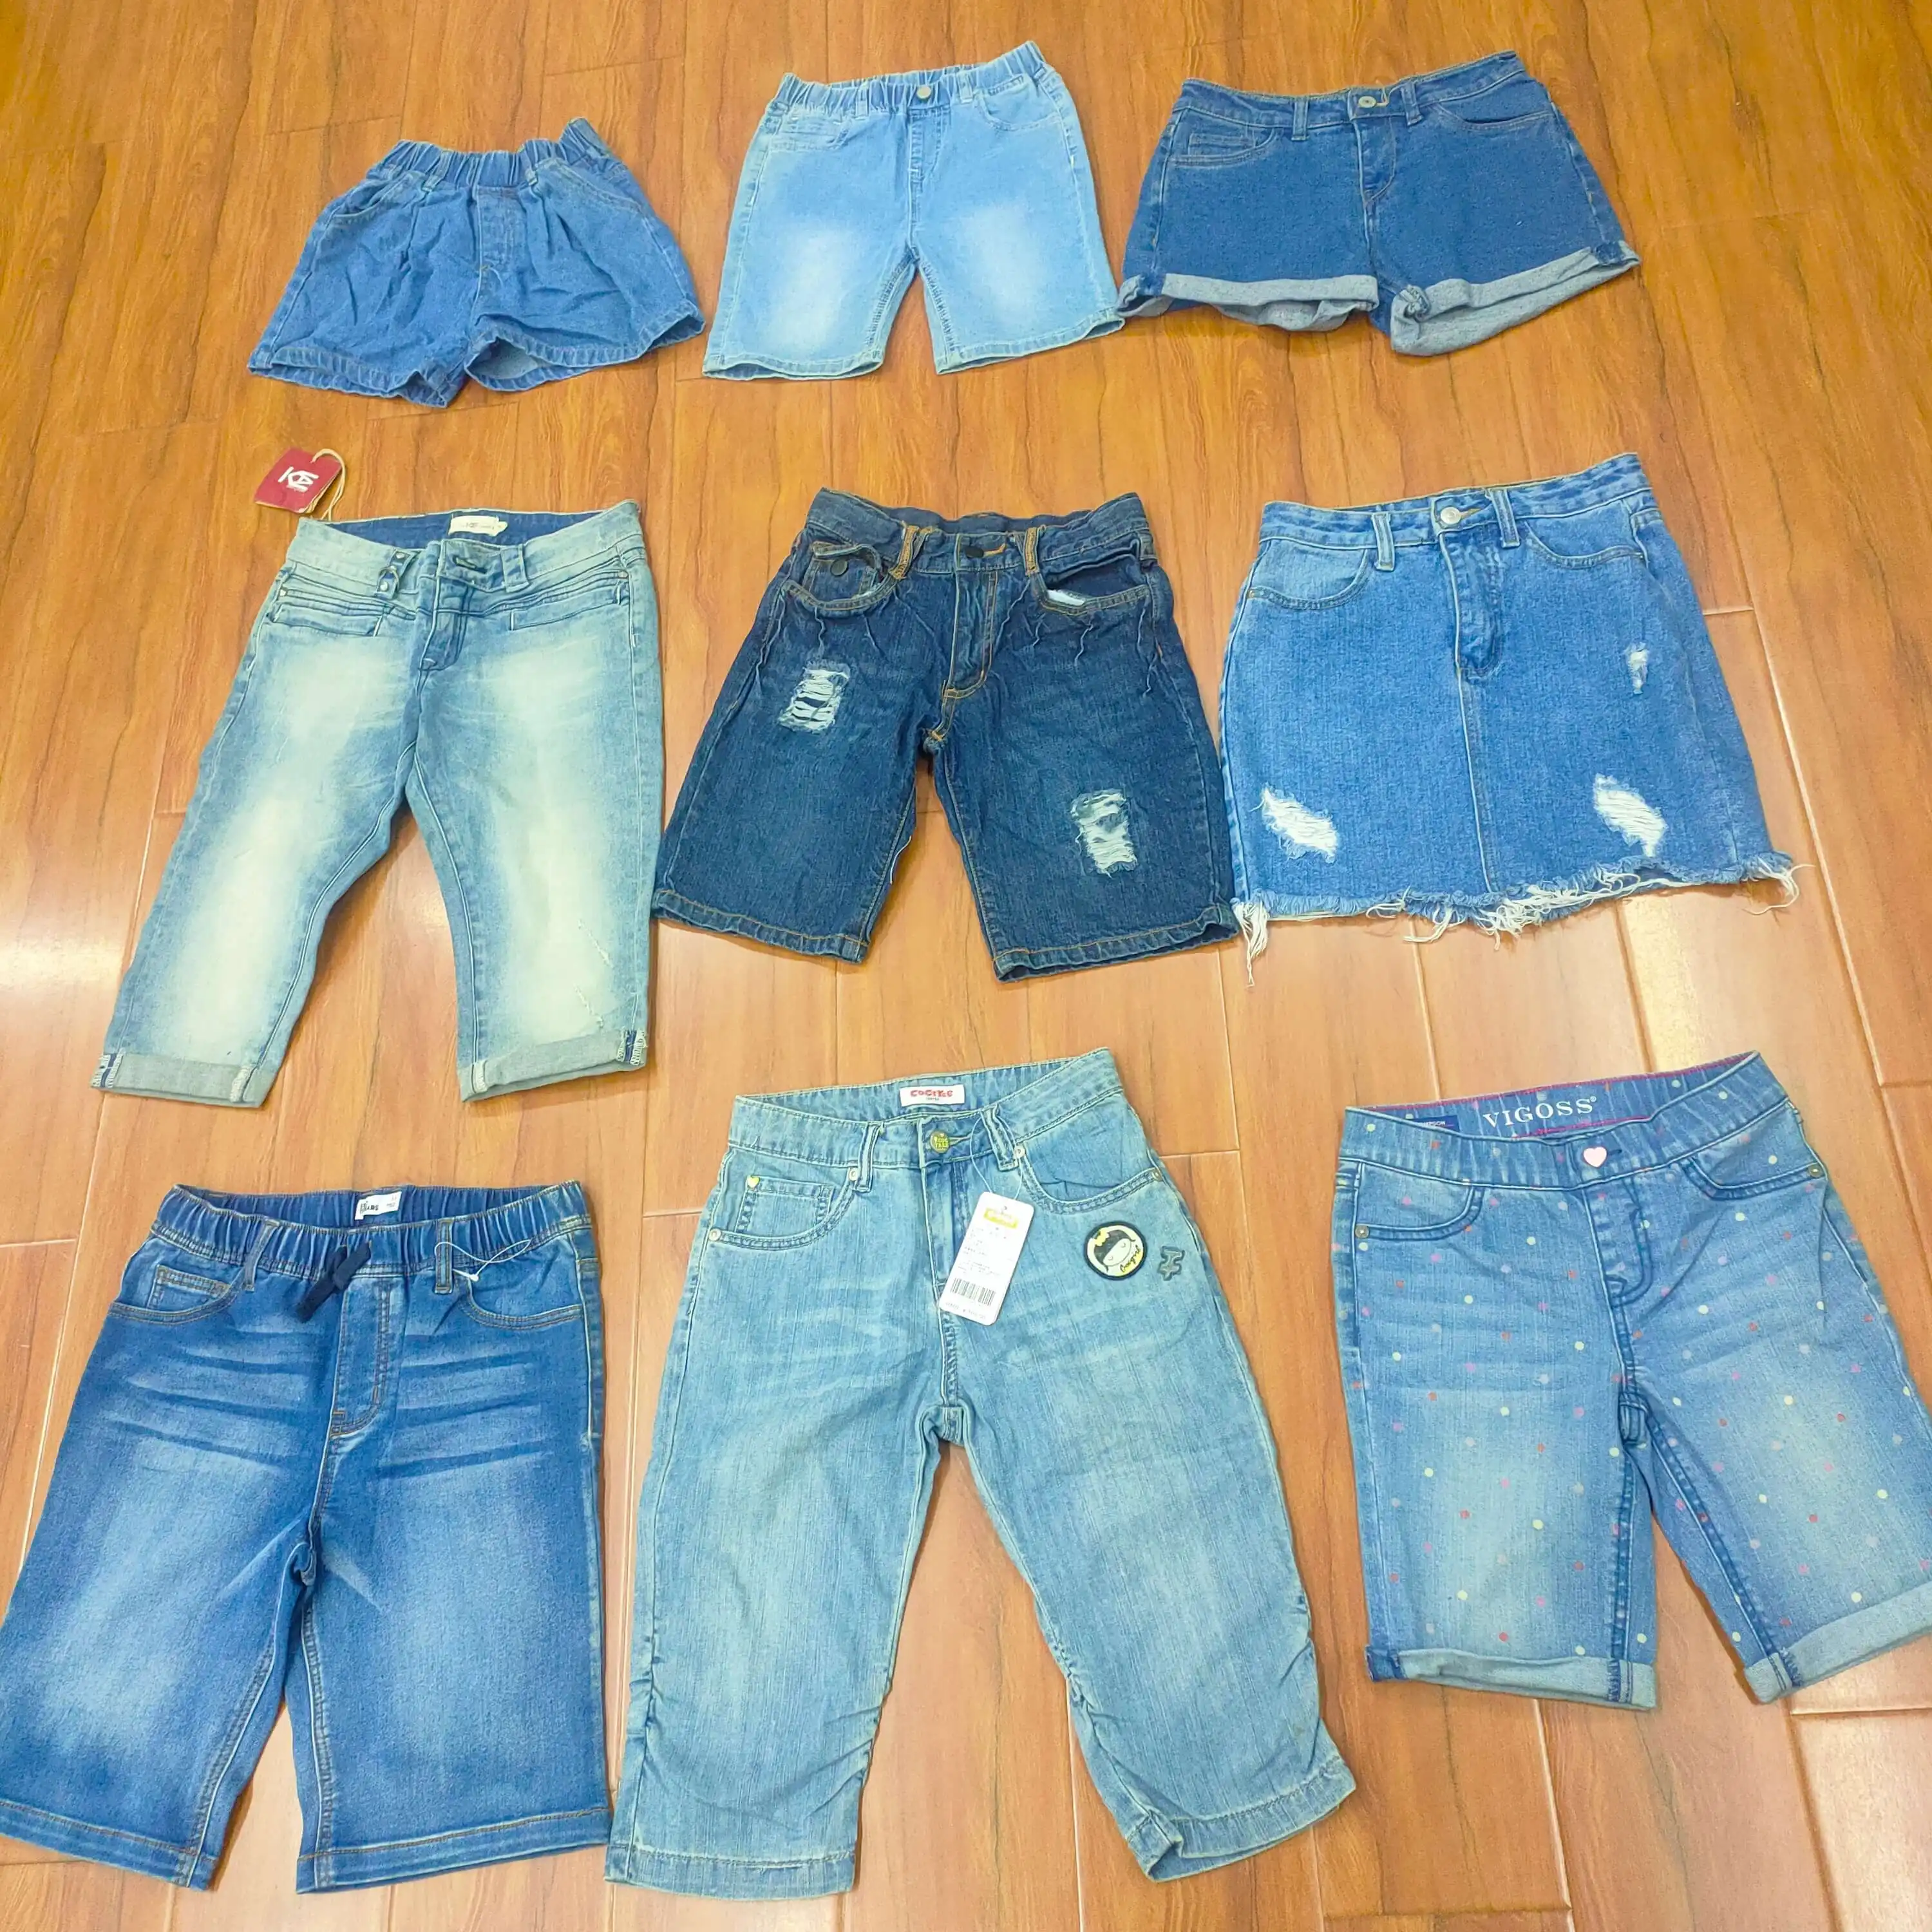 Calça jeans infantil de verão para crianças, calça de algodão mista para bebês recém-nascidos, meninos e meninas, calça barata